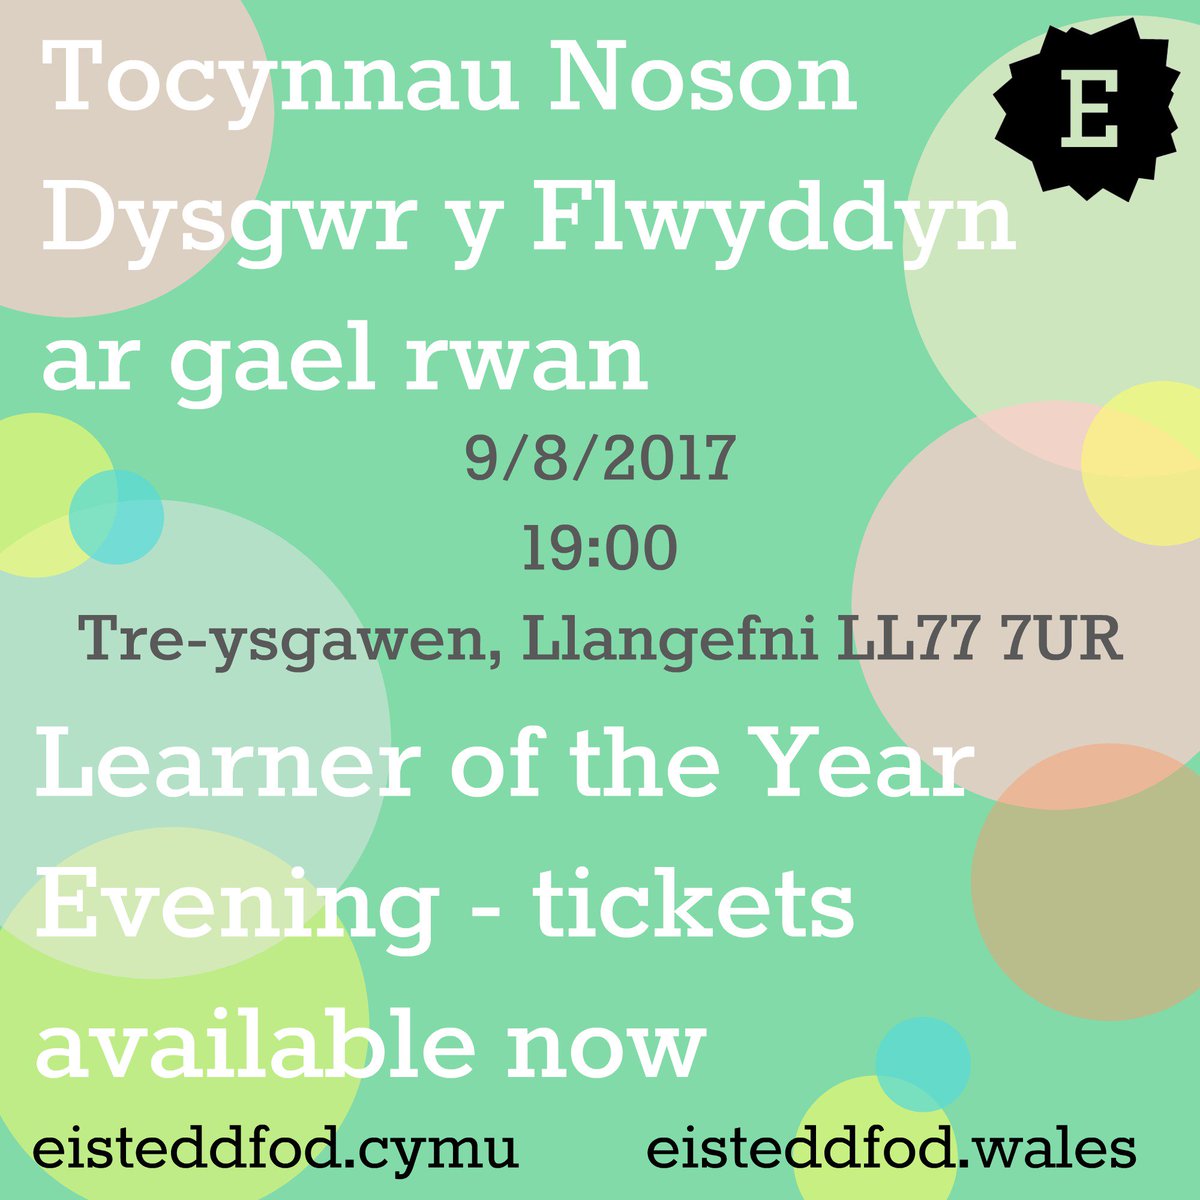 Rhai tocynnau dal ar gael - cyntaf i'r felin!
Some tickets still available -be quick! bit.ly/2tes1HI #dysgwryflwyddyn